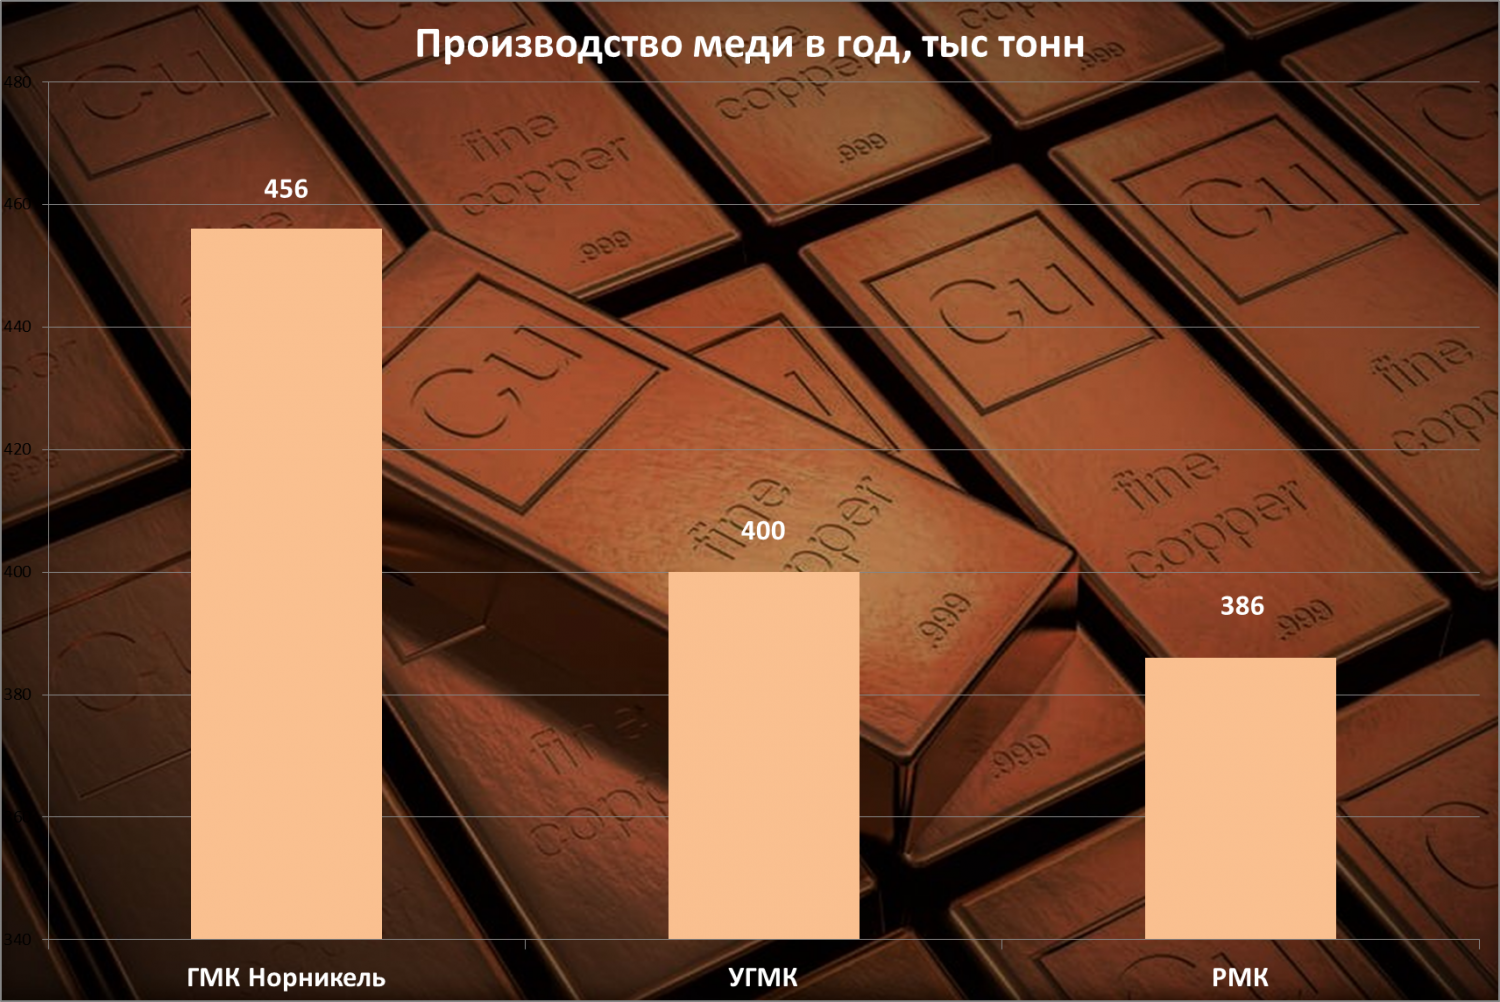 Крупнейшие производители меди в России